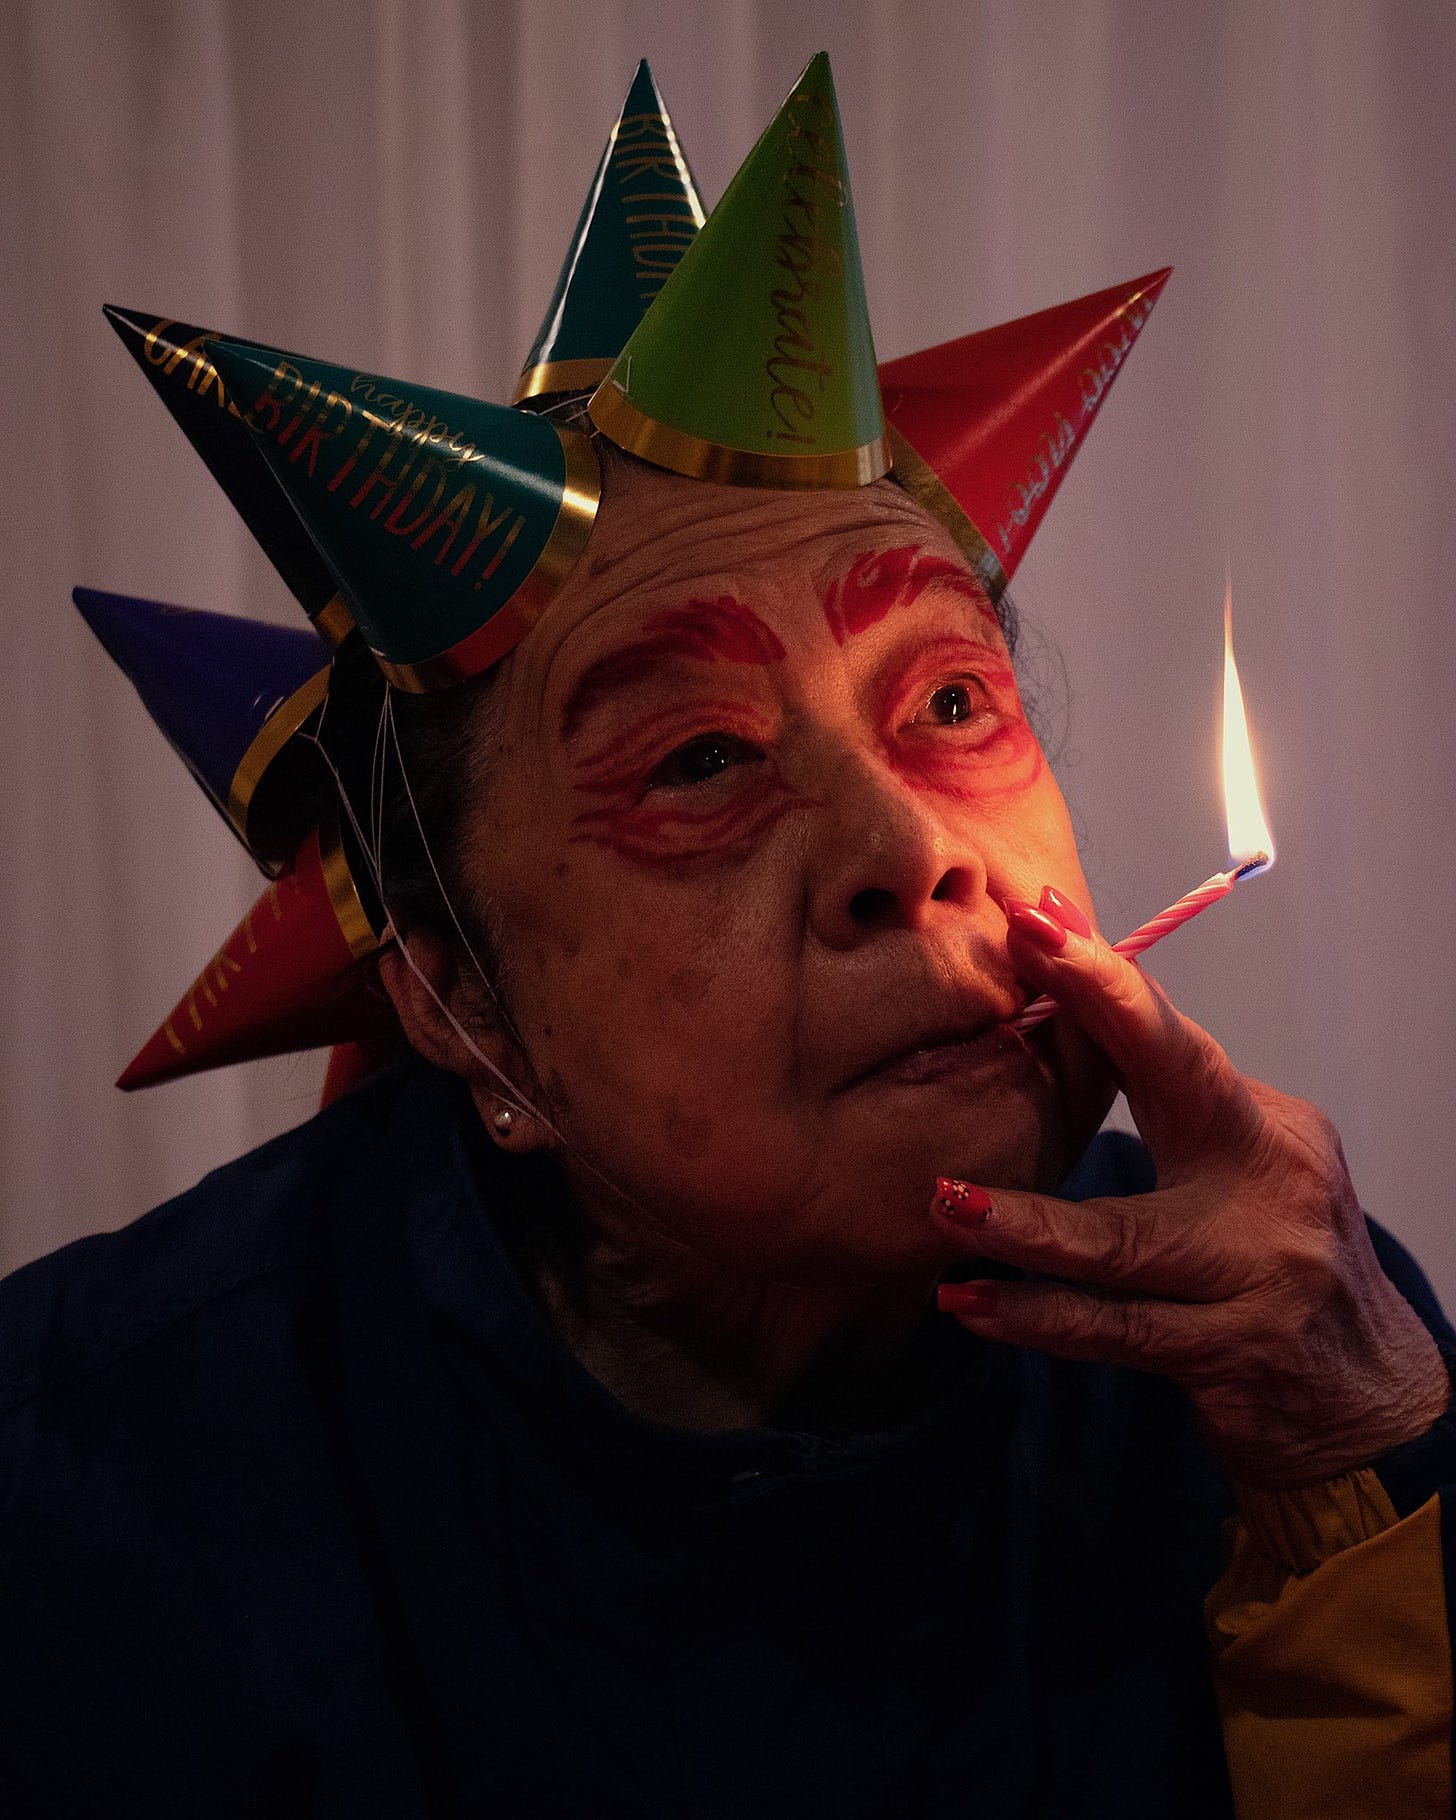 Fotografia de uma idosa com a cabeça coberta de pequenos chapéus cônicos de aniversário, fumando uma velinha de aniversário como um cigarro